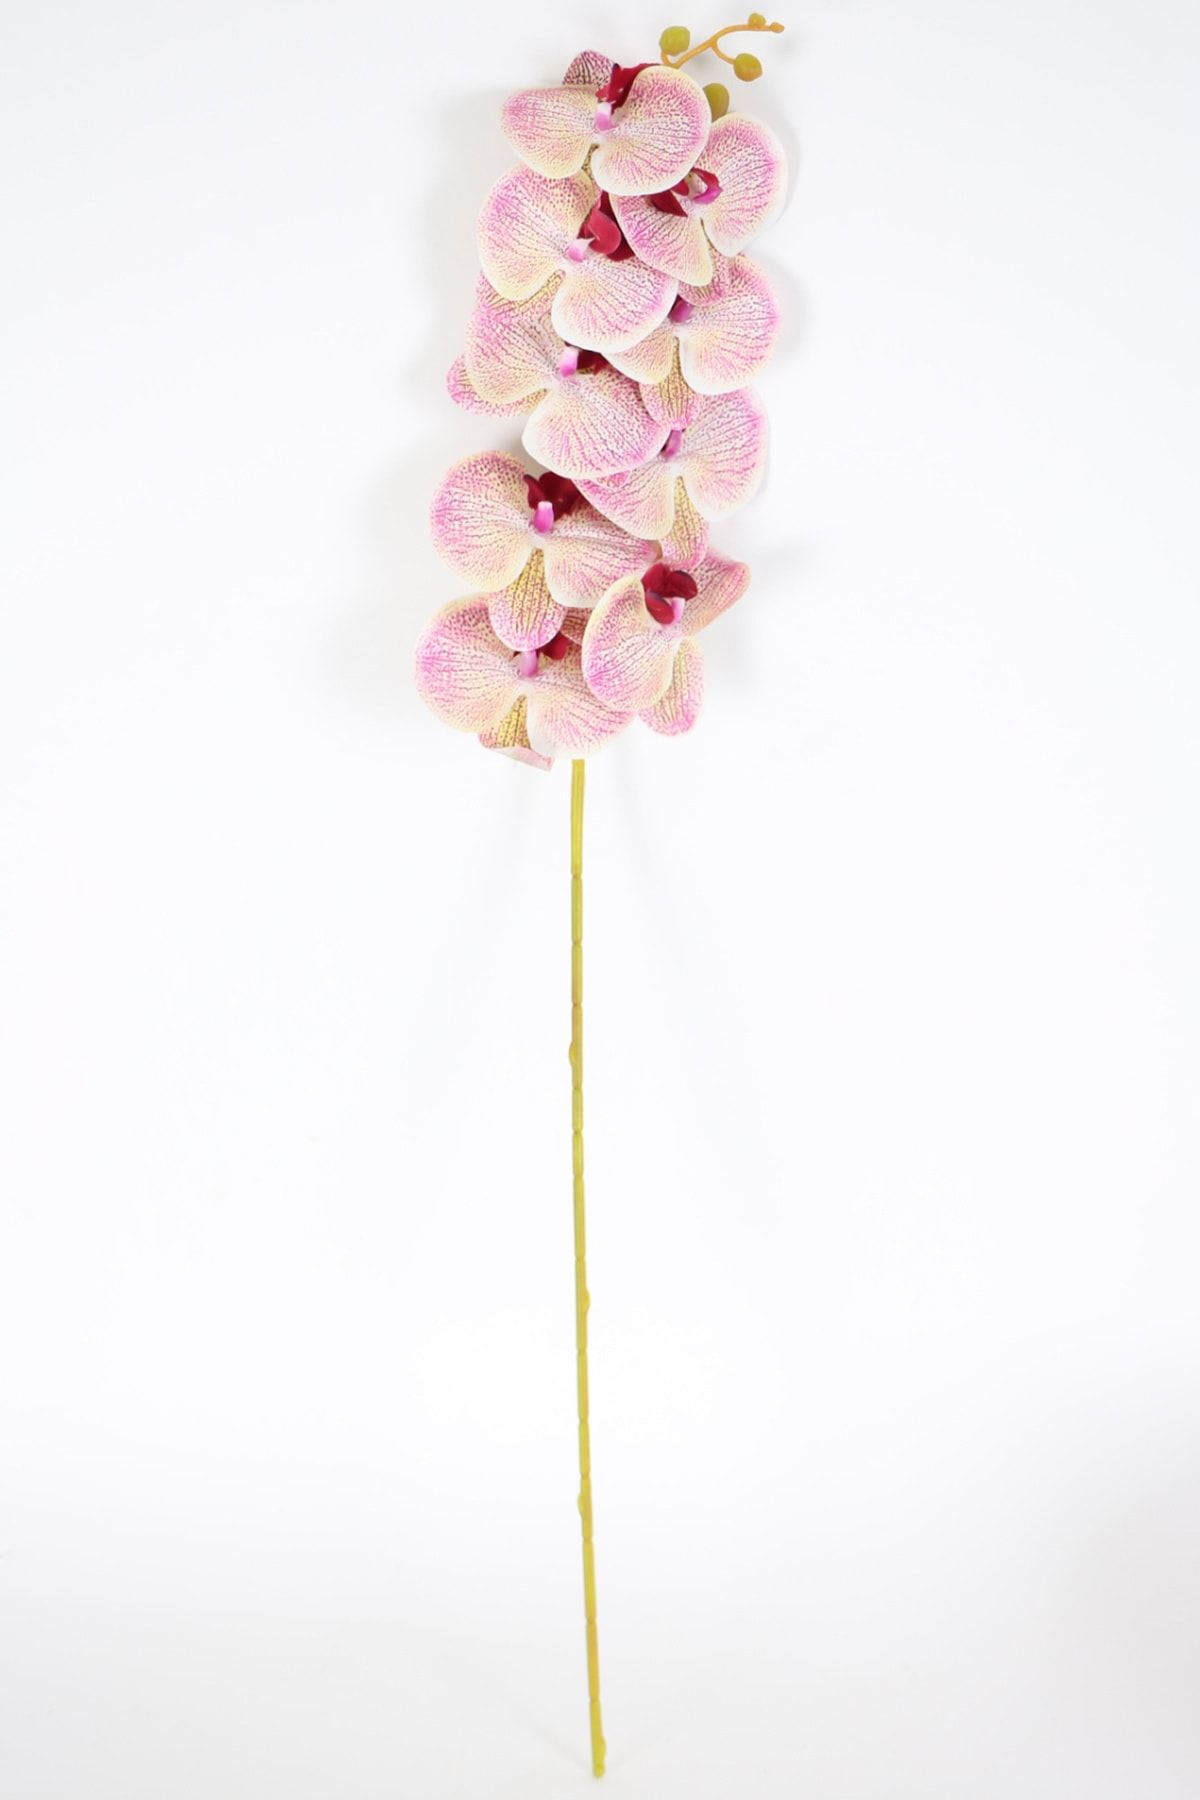 Yapay Çiçek Deposu Yapay Dal Baskılı Orkide Çiçeği 88 Cm Fuşya Krem